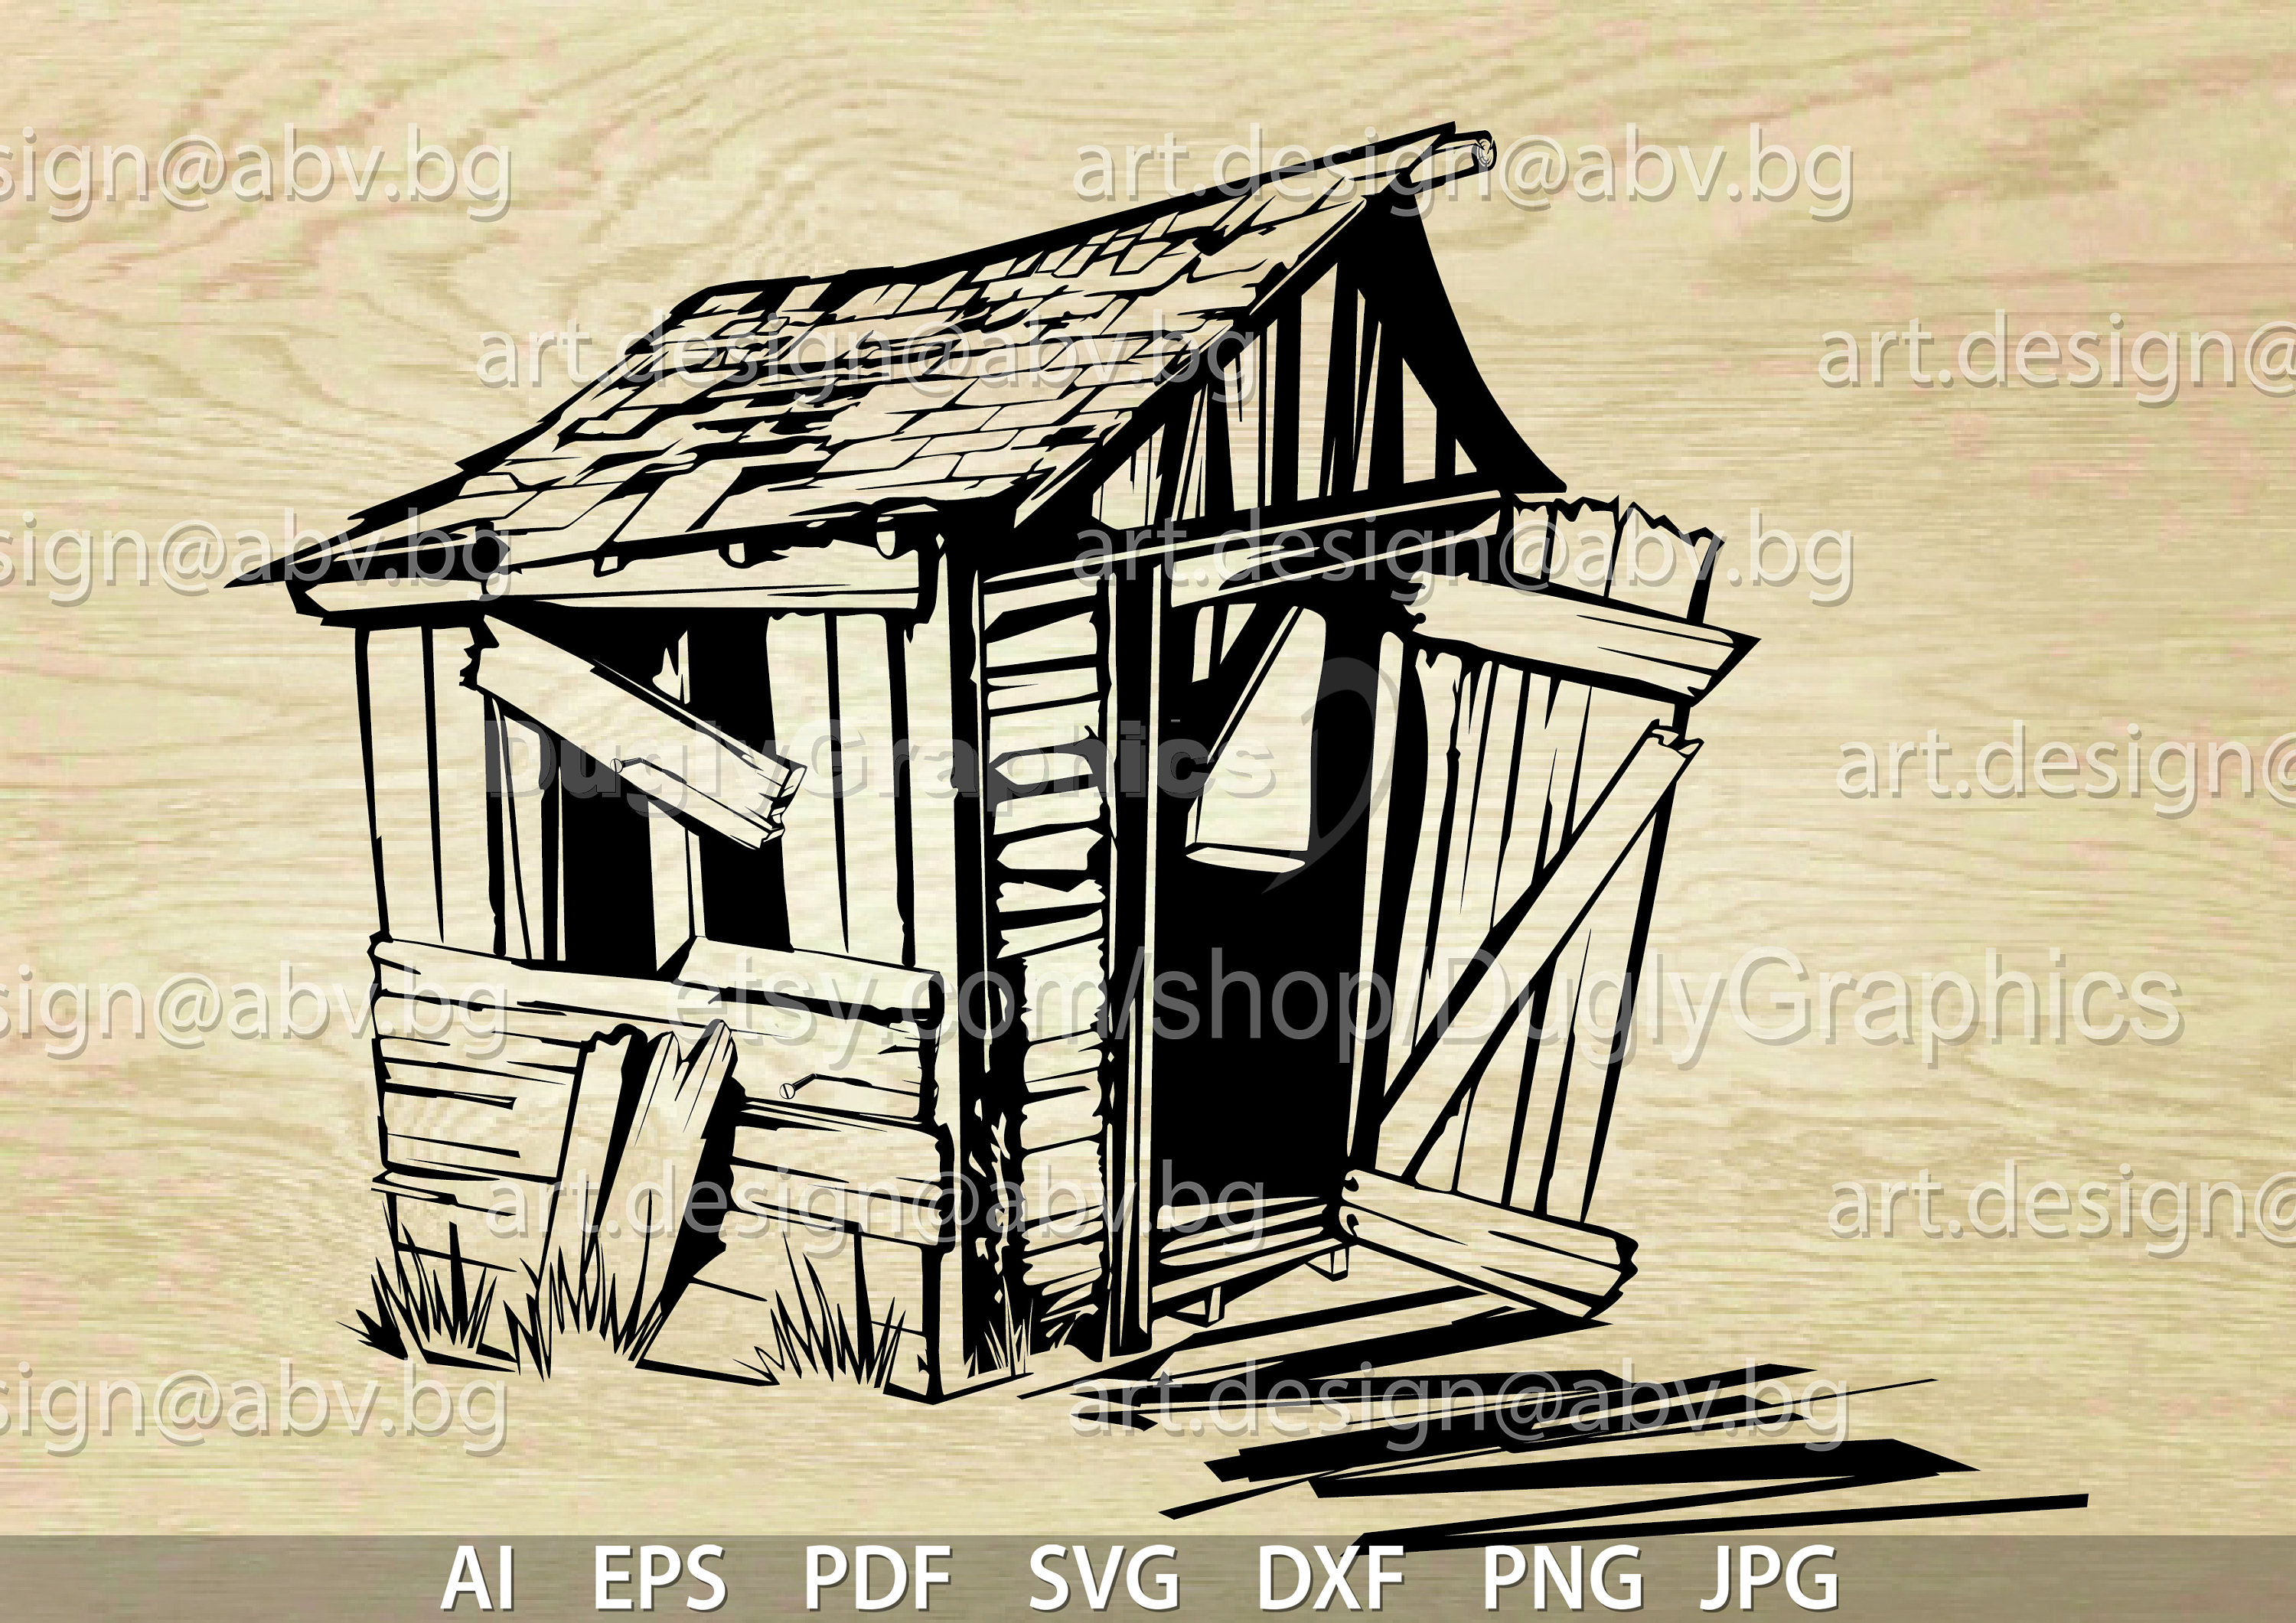 Little log cabin and landscape for  Black Sheep Tattoos  Facebook